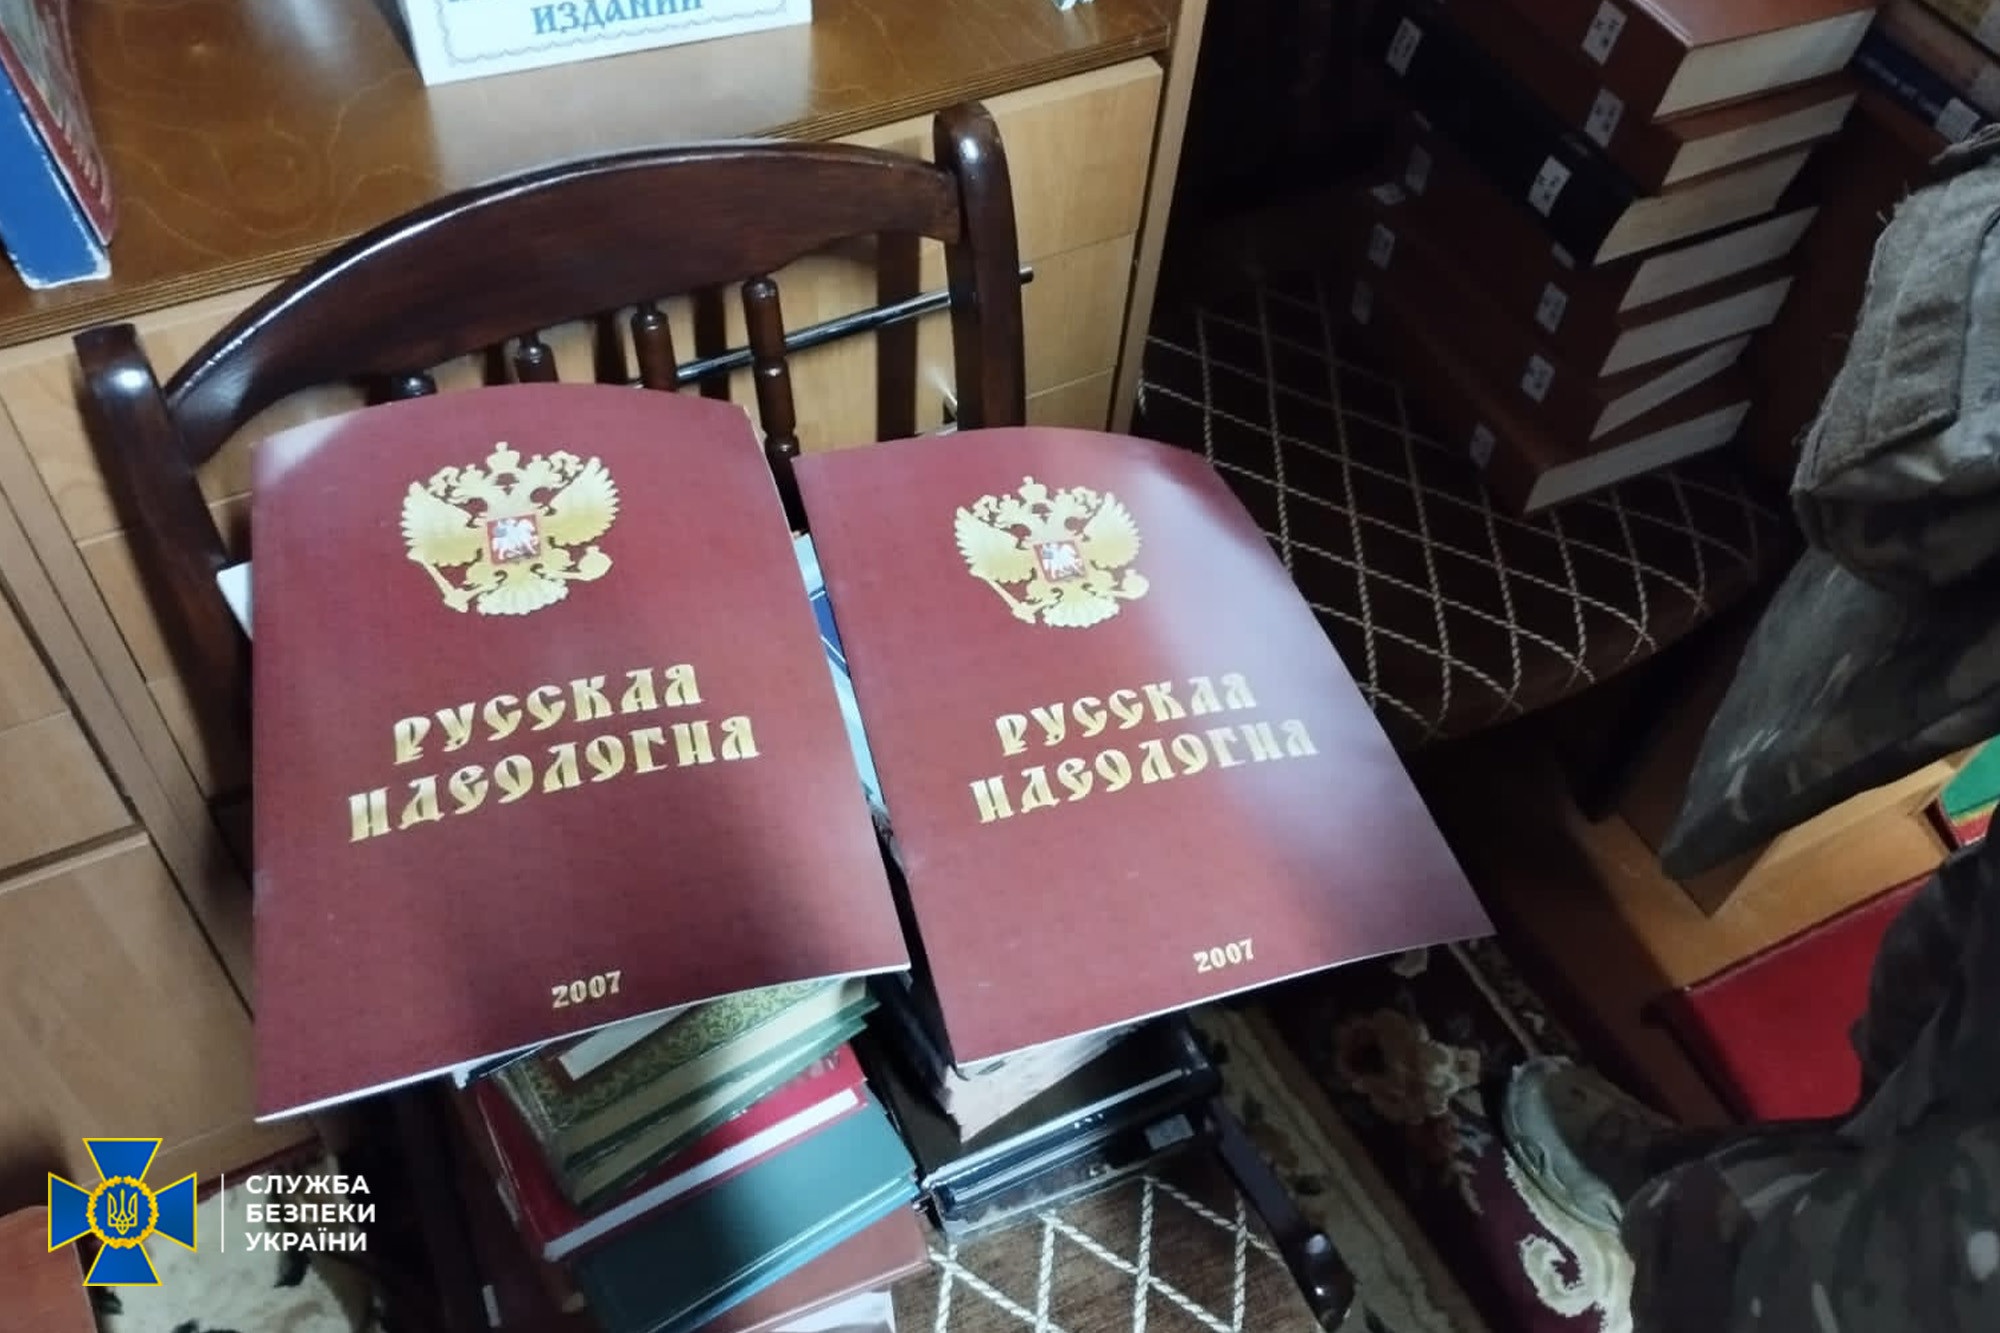 СБУ: в УПЦ найдены россияне, литература за РФ, масса денег